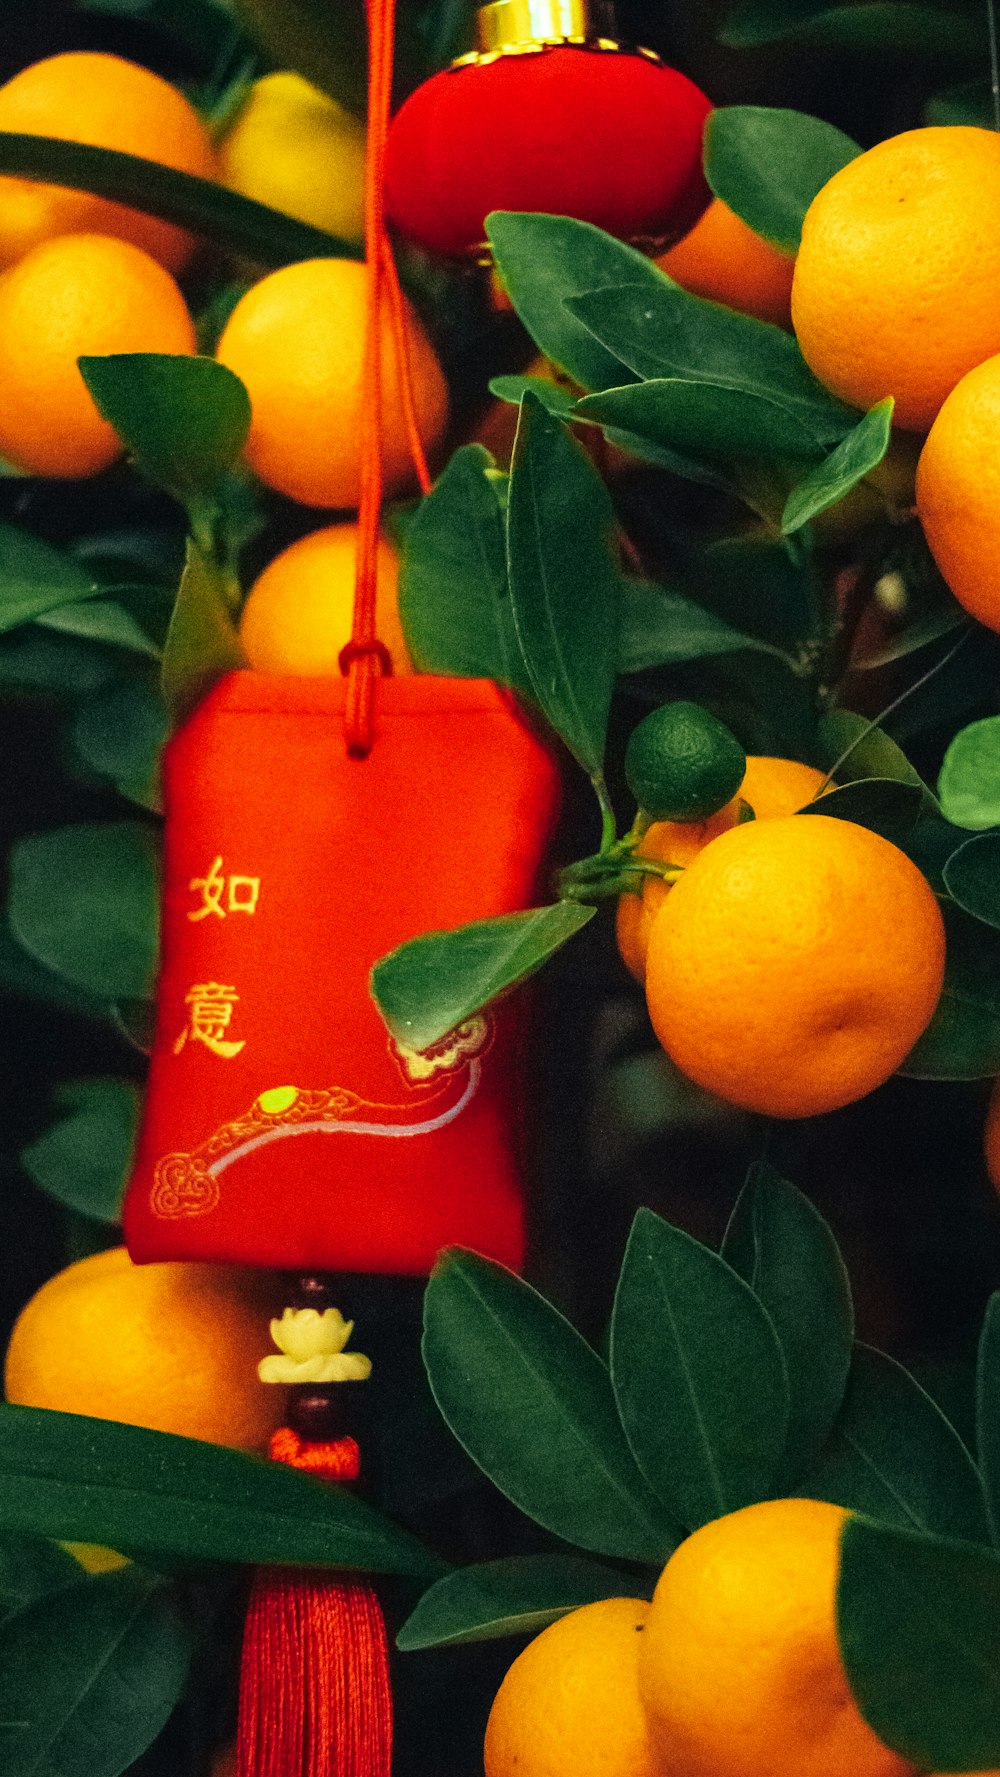 오렌지로 가득 찬 나무에 매달린 빨간 가방